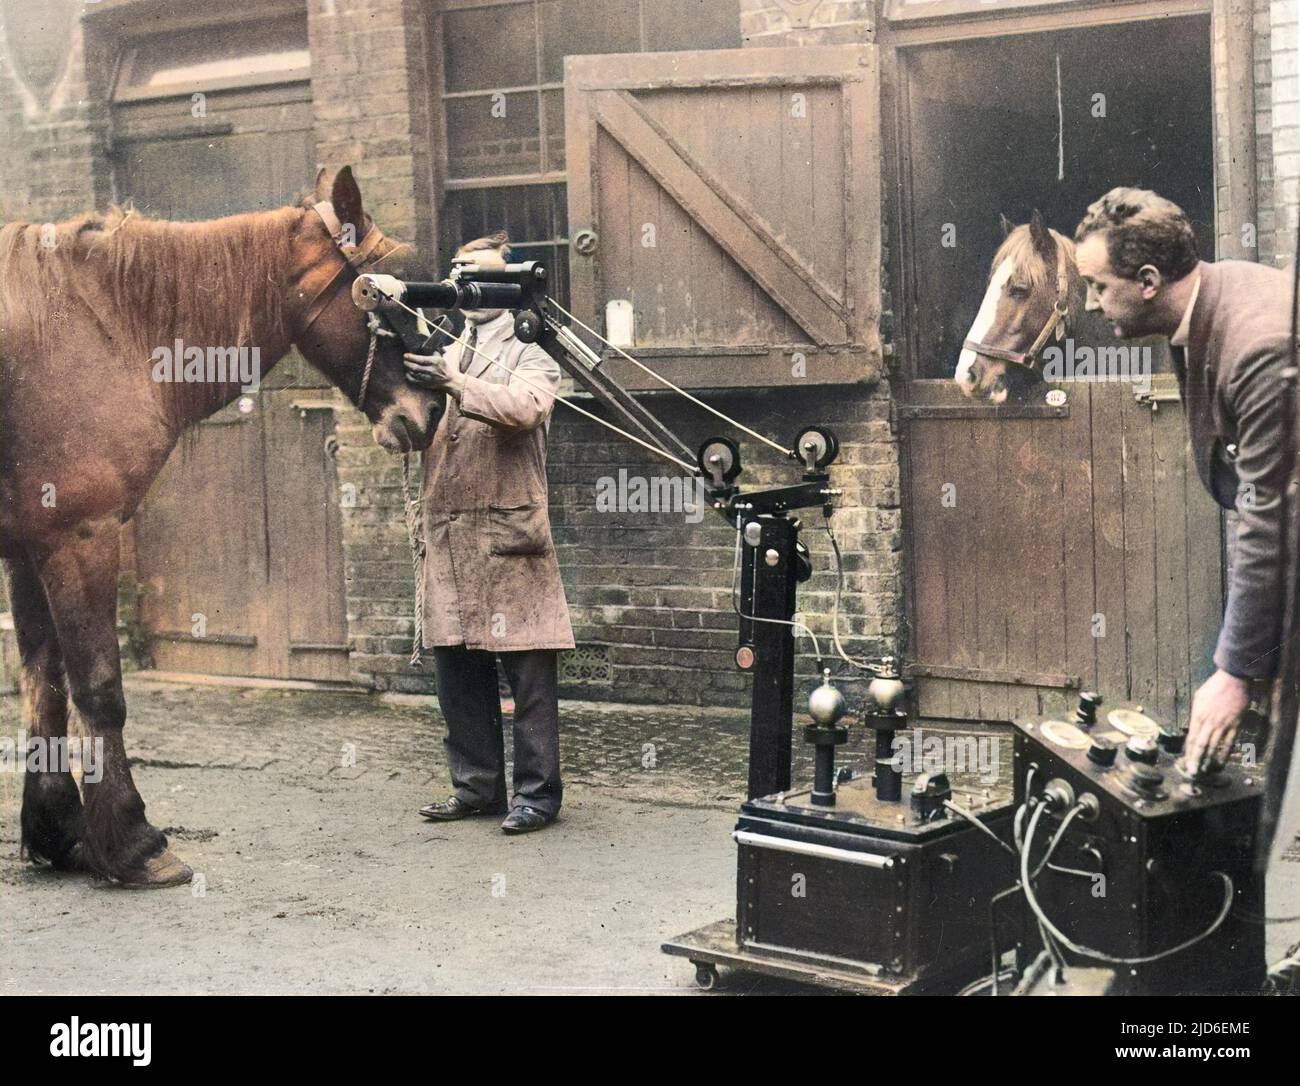 Ein Pferd, das am Royal Veterinary College, Camden, London, mit einem tragbaren Röntgengerät geröntgt wurde, das sich bei der Behandlung von Tierbeschwerden als unschätzbar wertvoll erwiesen hat. Kolorierte Version von : 10150403 Datum: Anfang 1930s Stockfoto